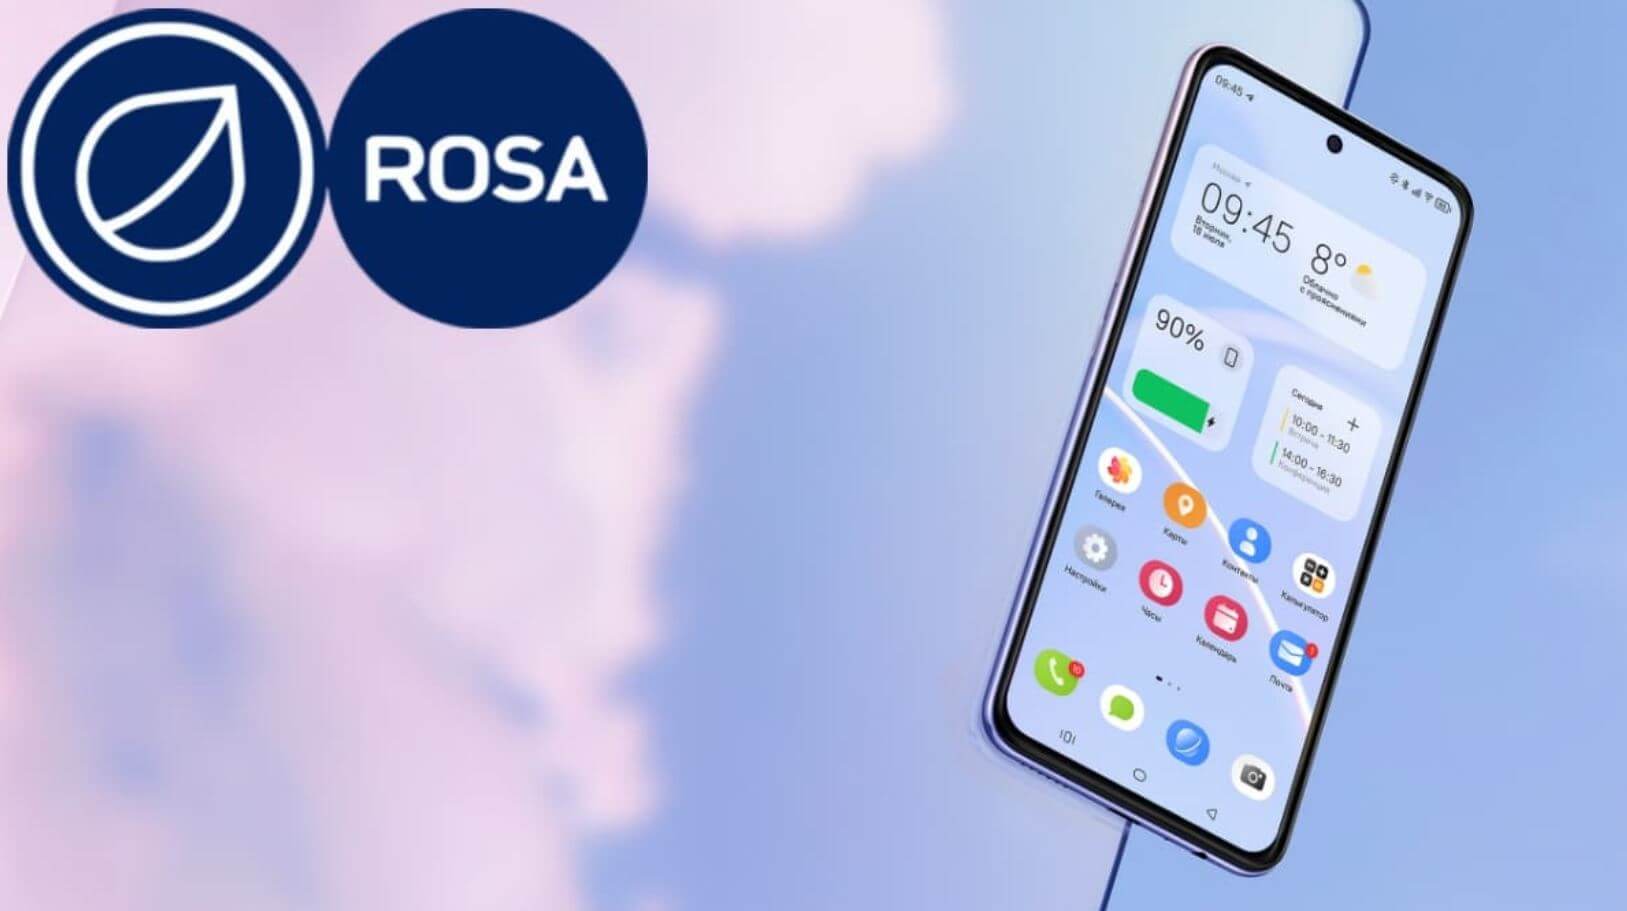 Российская ОС для смартфонов Rosa Mobile. Rosa Mobile выглядит достаточно симпатично. Вопрос лишь в том, как она работает на самом деле. Фото.